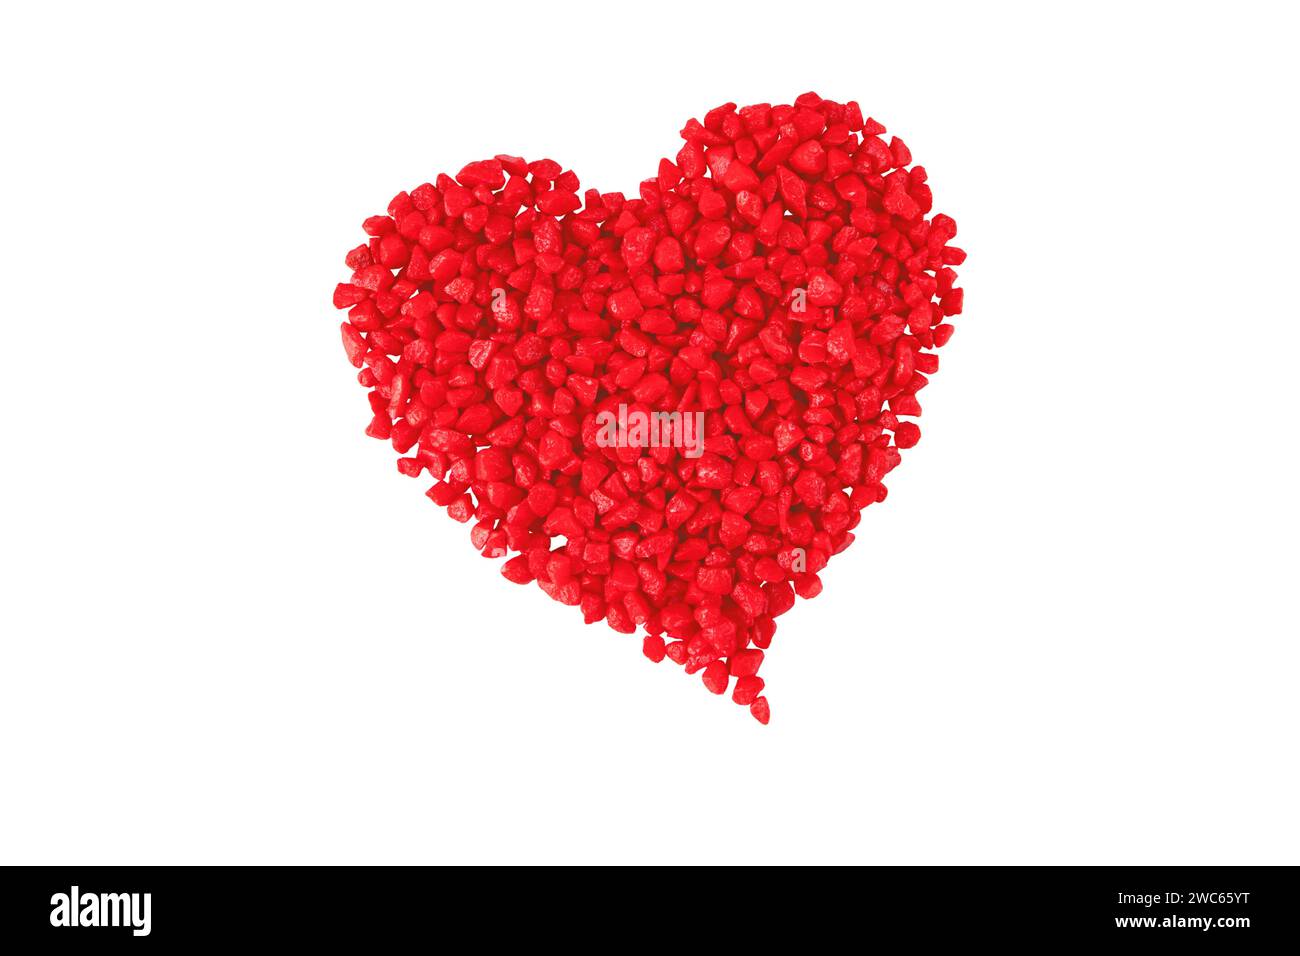 Cuore rosso fatto di piccole pietre decorative isolate su bianco. San Valentino simbolo di amore, romanticismo, calore e felicità. Festività del 14 febbraio Foto Stock